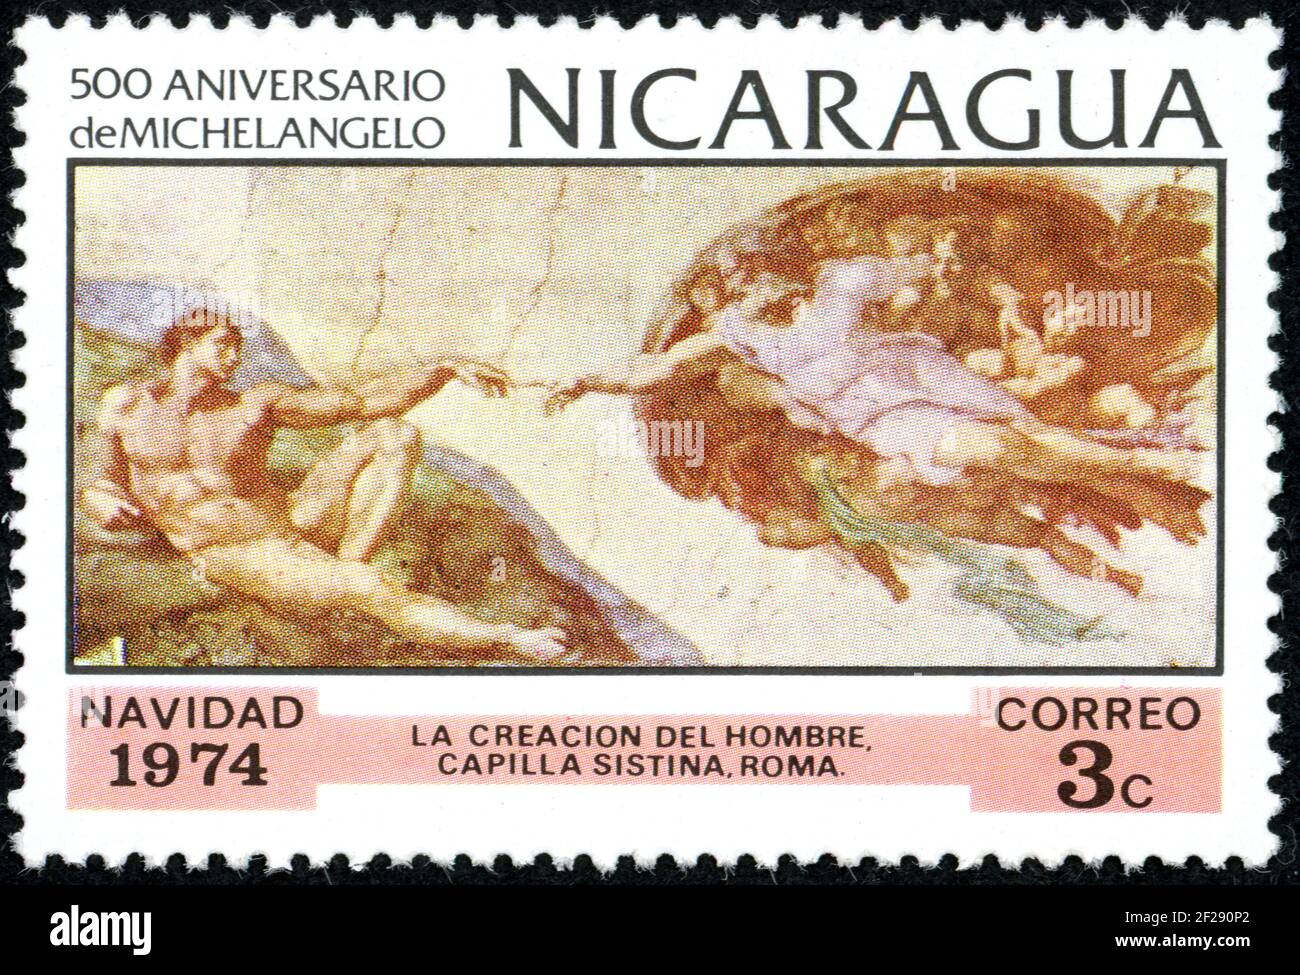 NICARAGUA - CIRCA 1974: Un francobollo stampato in Nicaragua, edizione natalizia, mostra il dipinto di Michelangelo - la creazione di Adamo, circa 1974 Foto Stock